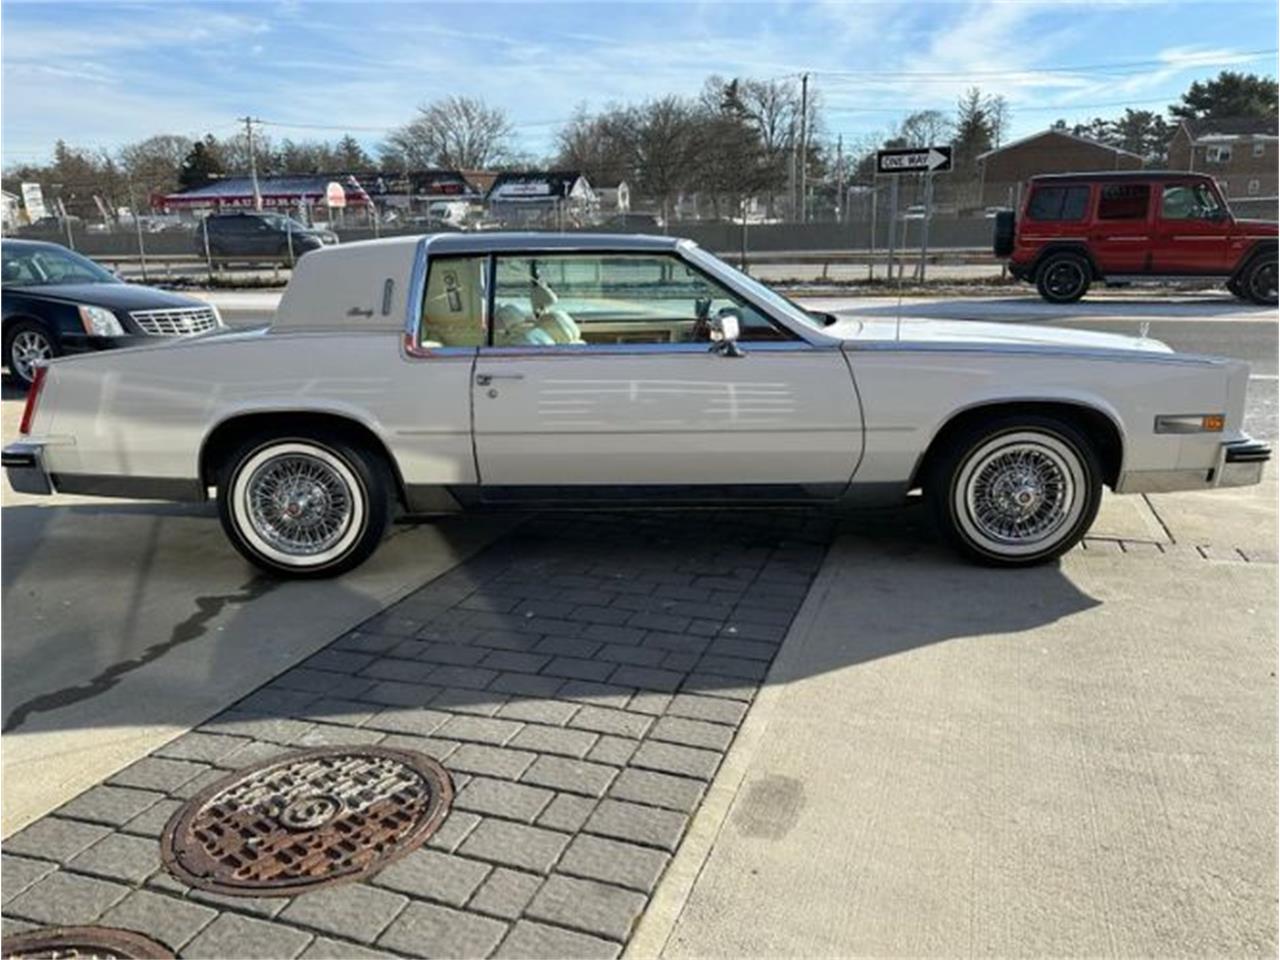 For Sale: 1984 Cadillac Eldorado in Cadillac, Michigan for sale in Cadillac, MI